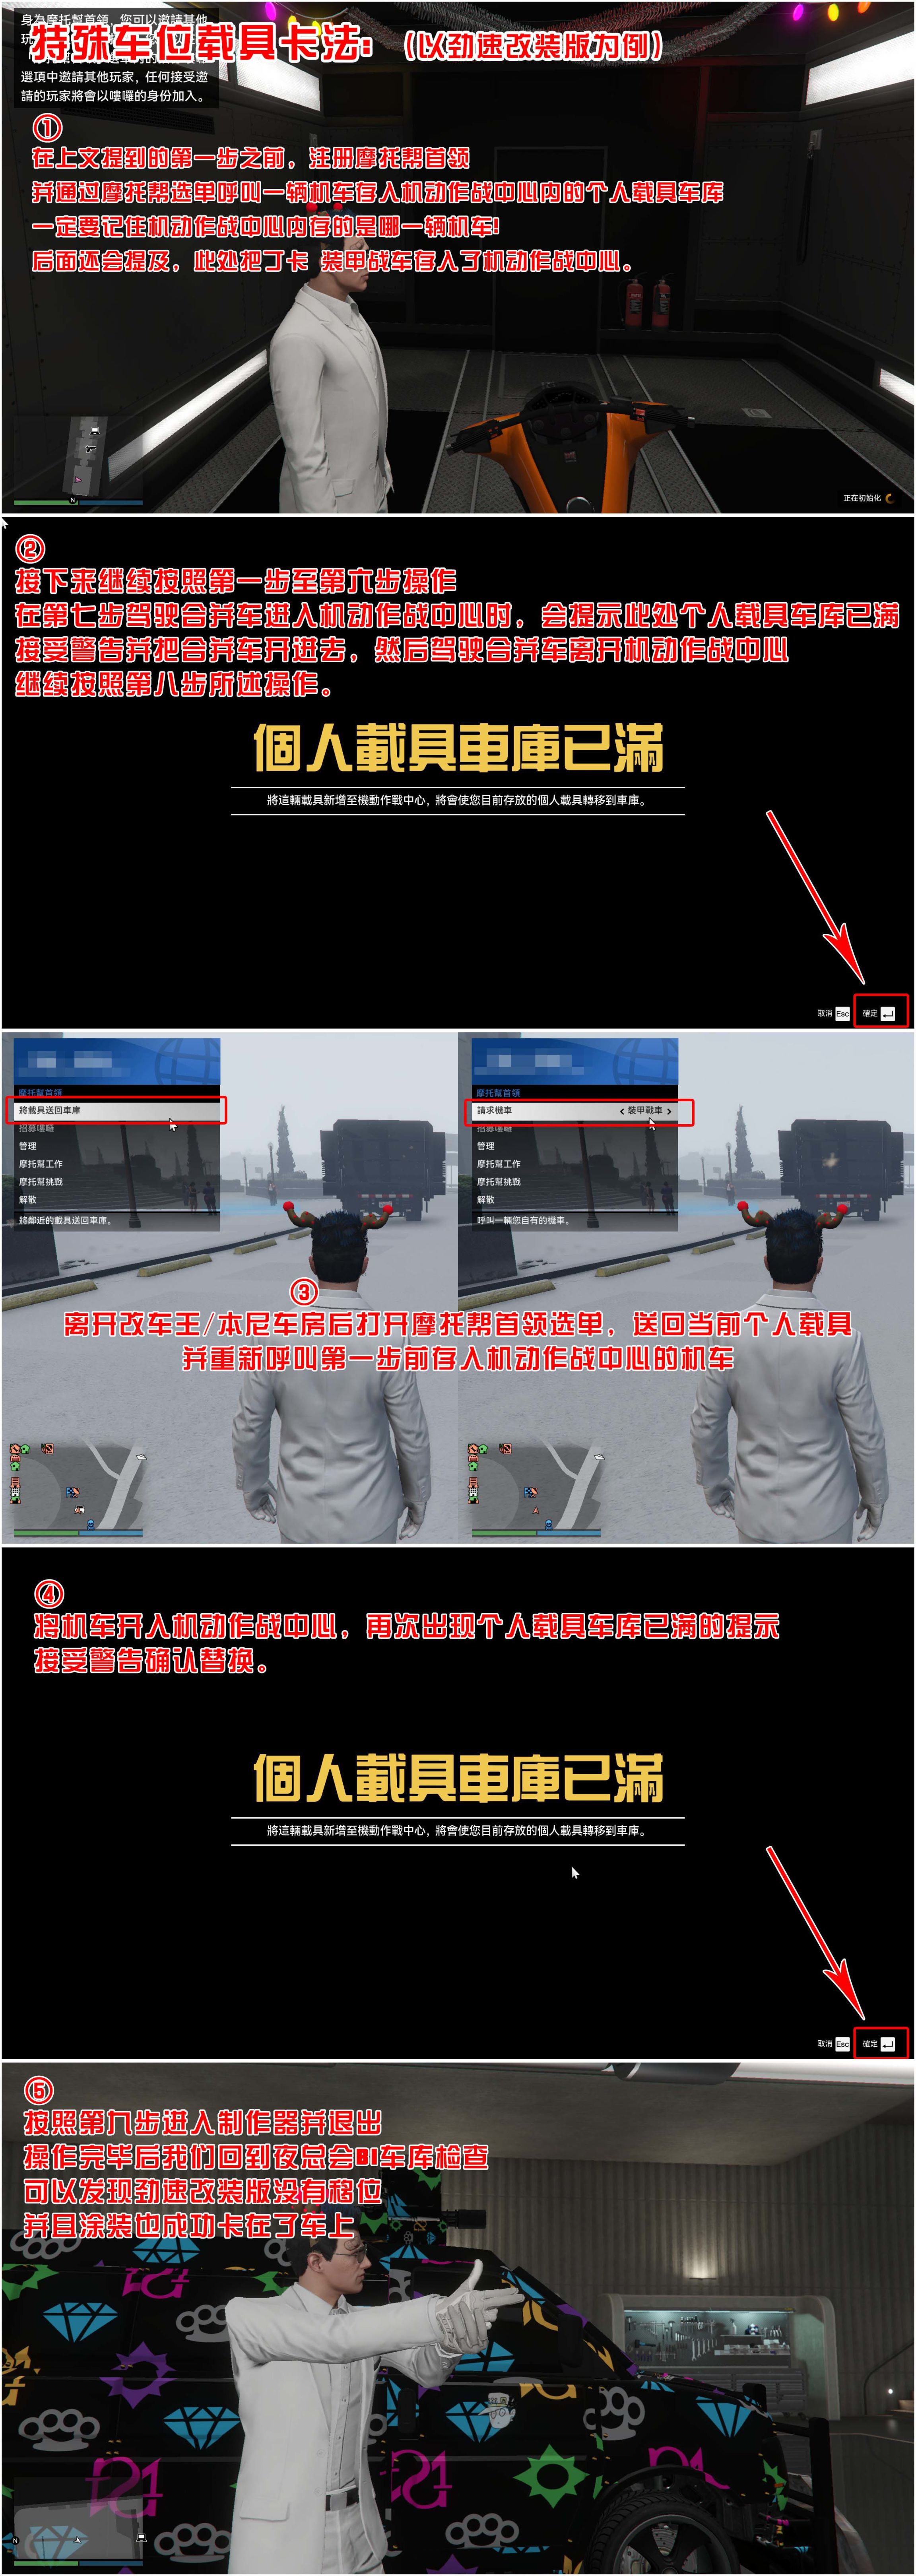 【俠盜獵車手5】GTA 在線模式攻略：獲取載具隱藏塗裝&複製車&變造外貿載具-第10張